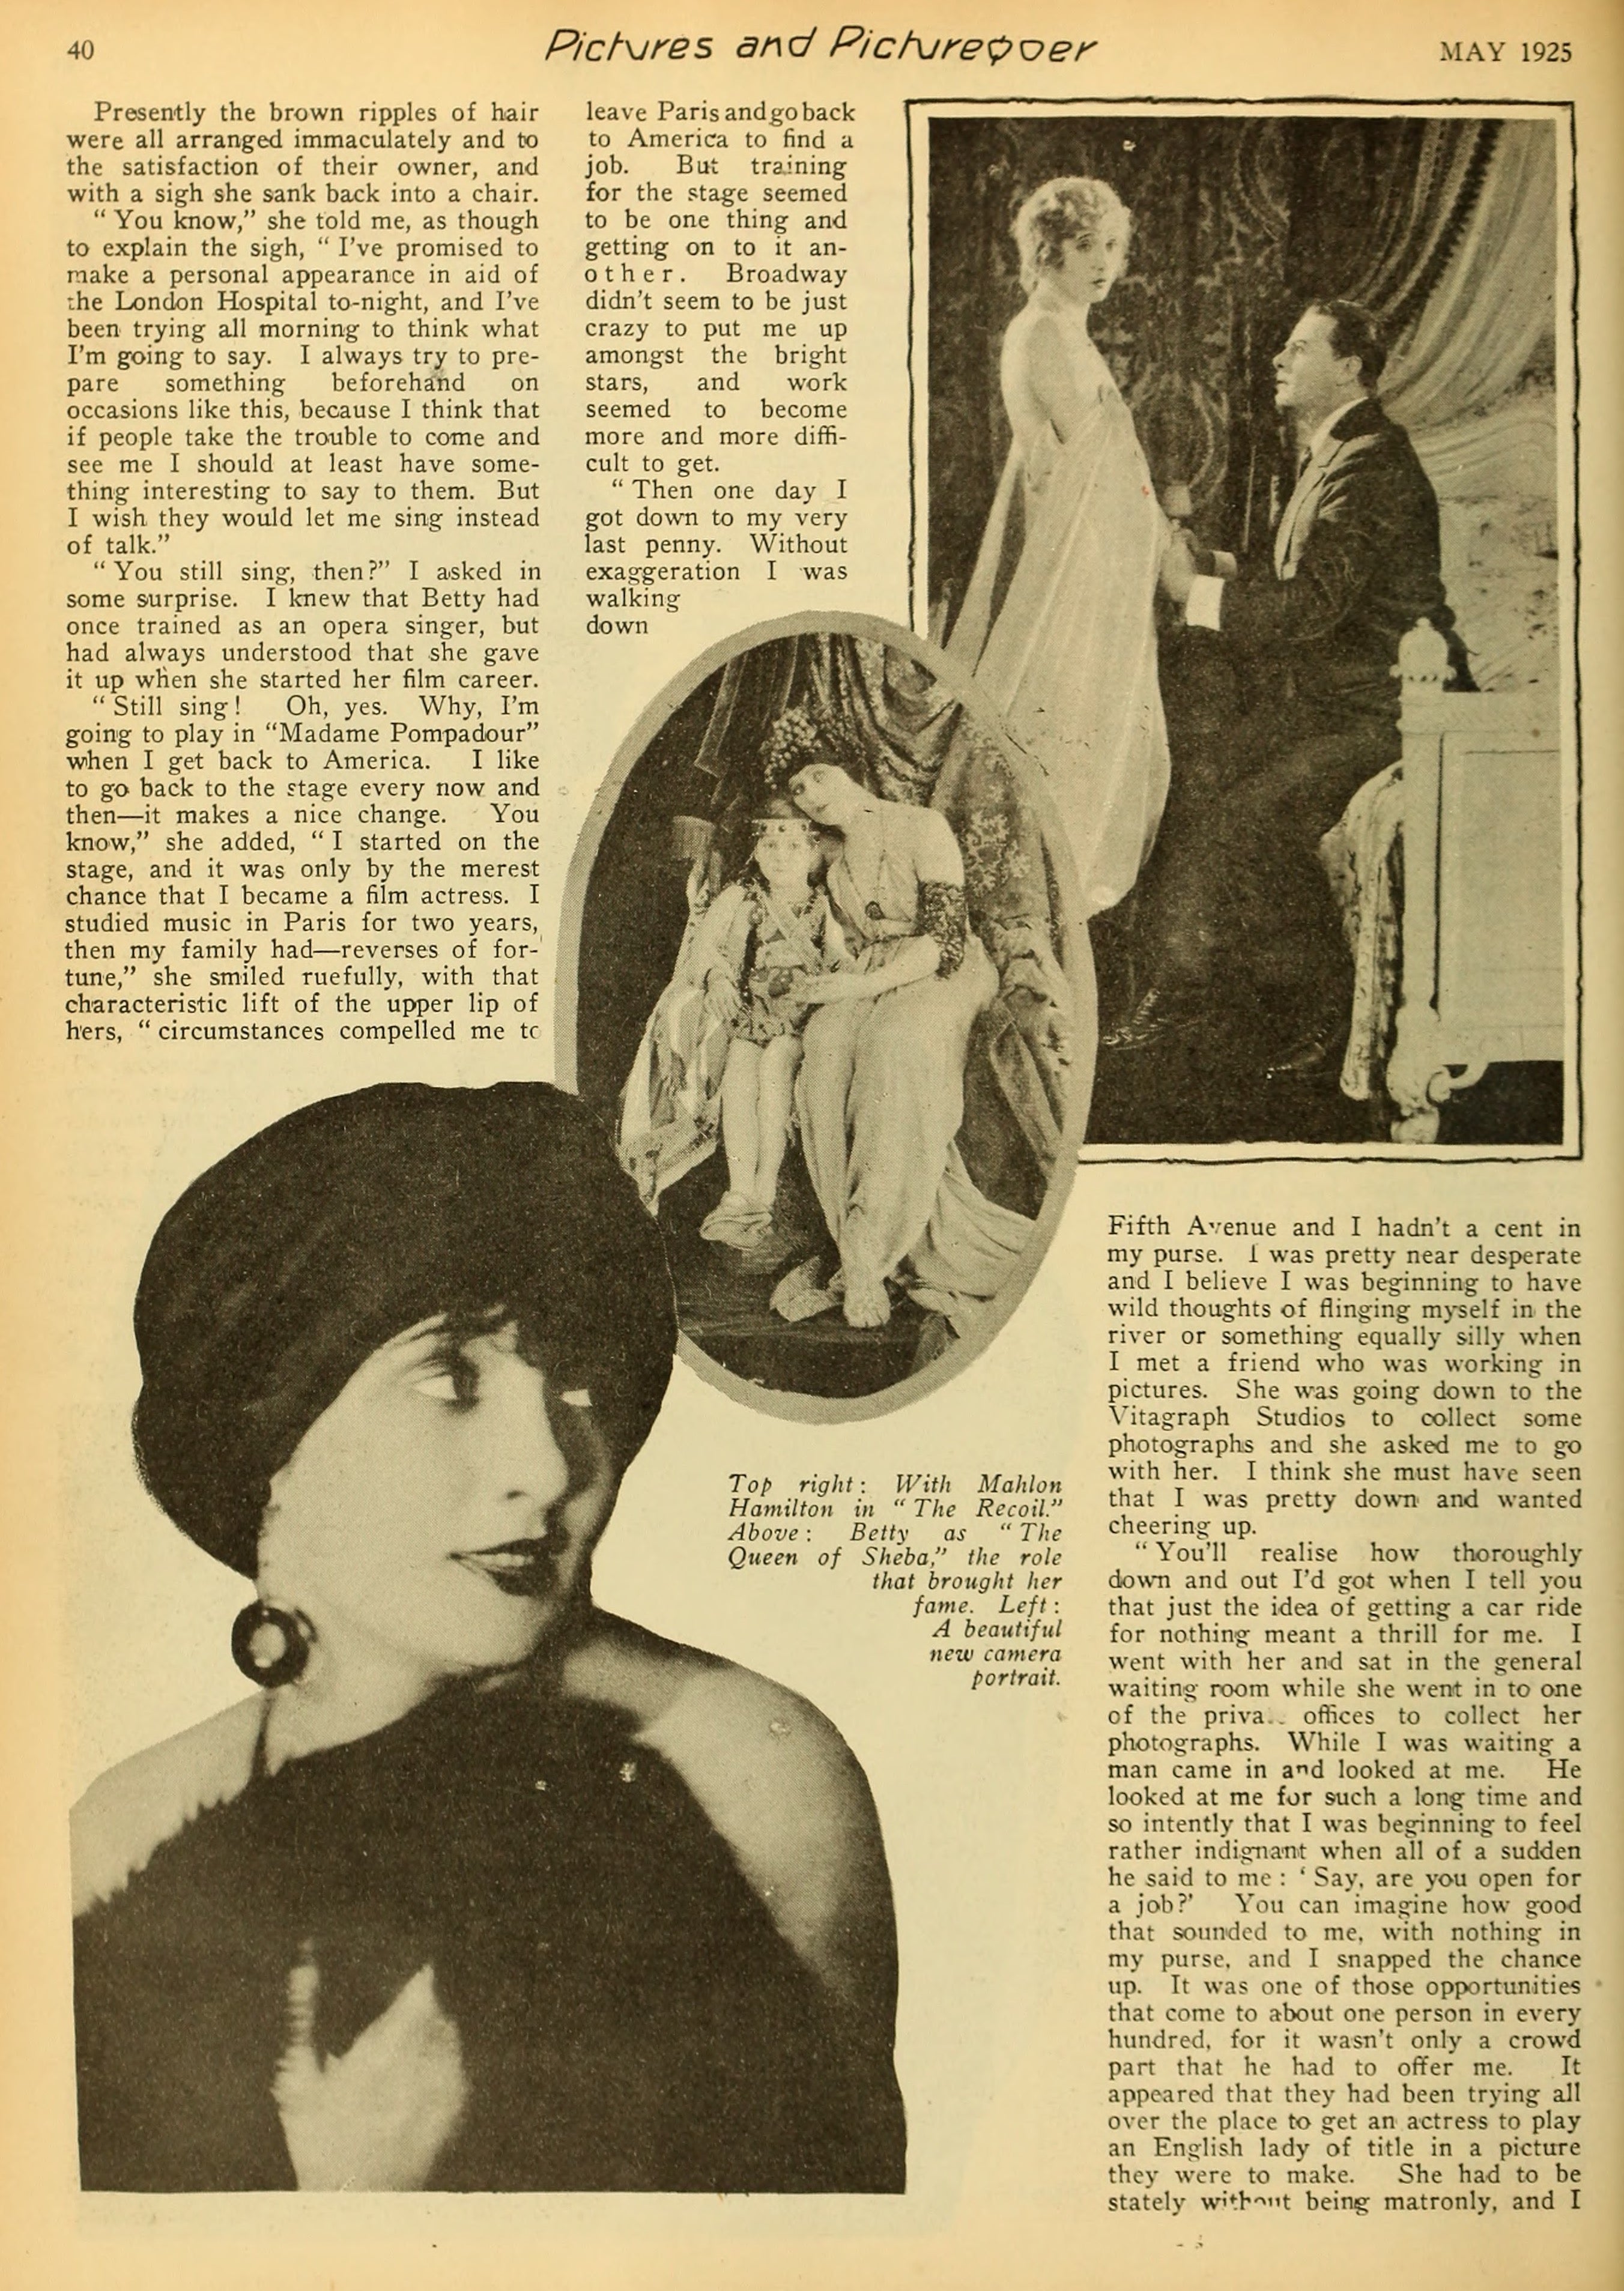 Betty Blythe — A Bit About About Betty (1925) | www.vintoz.com